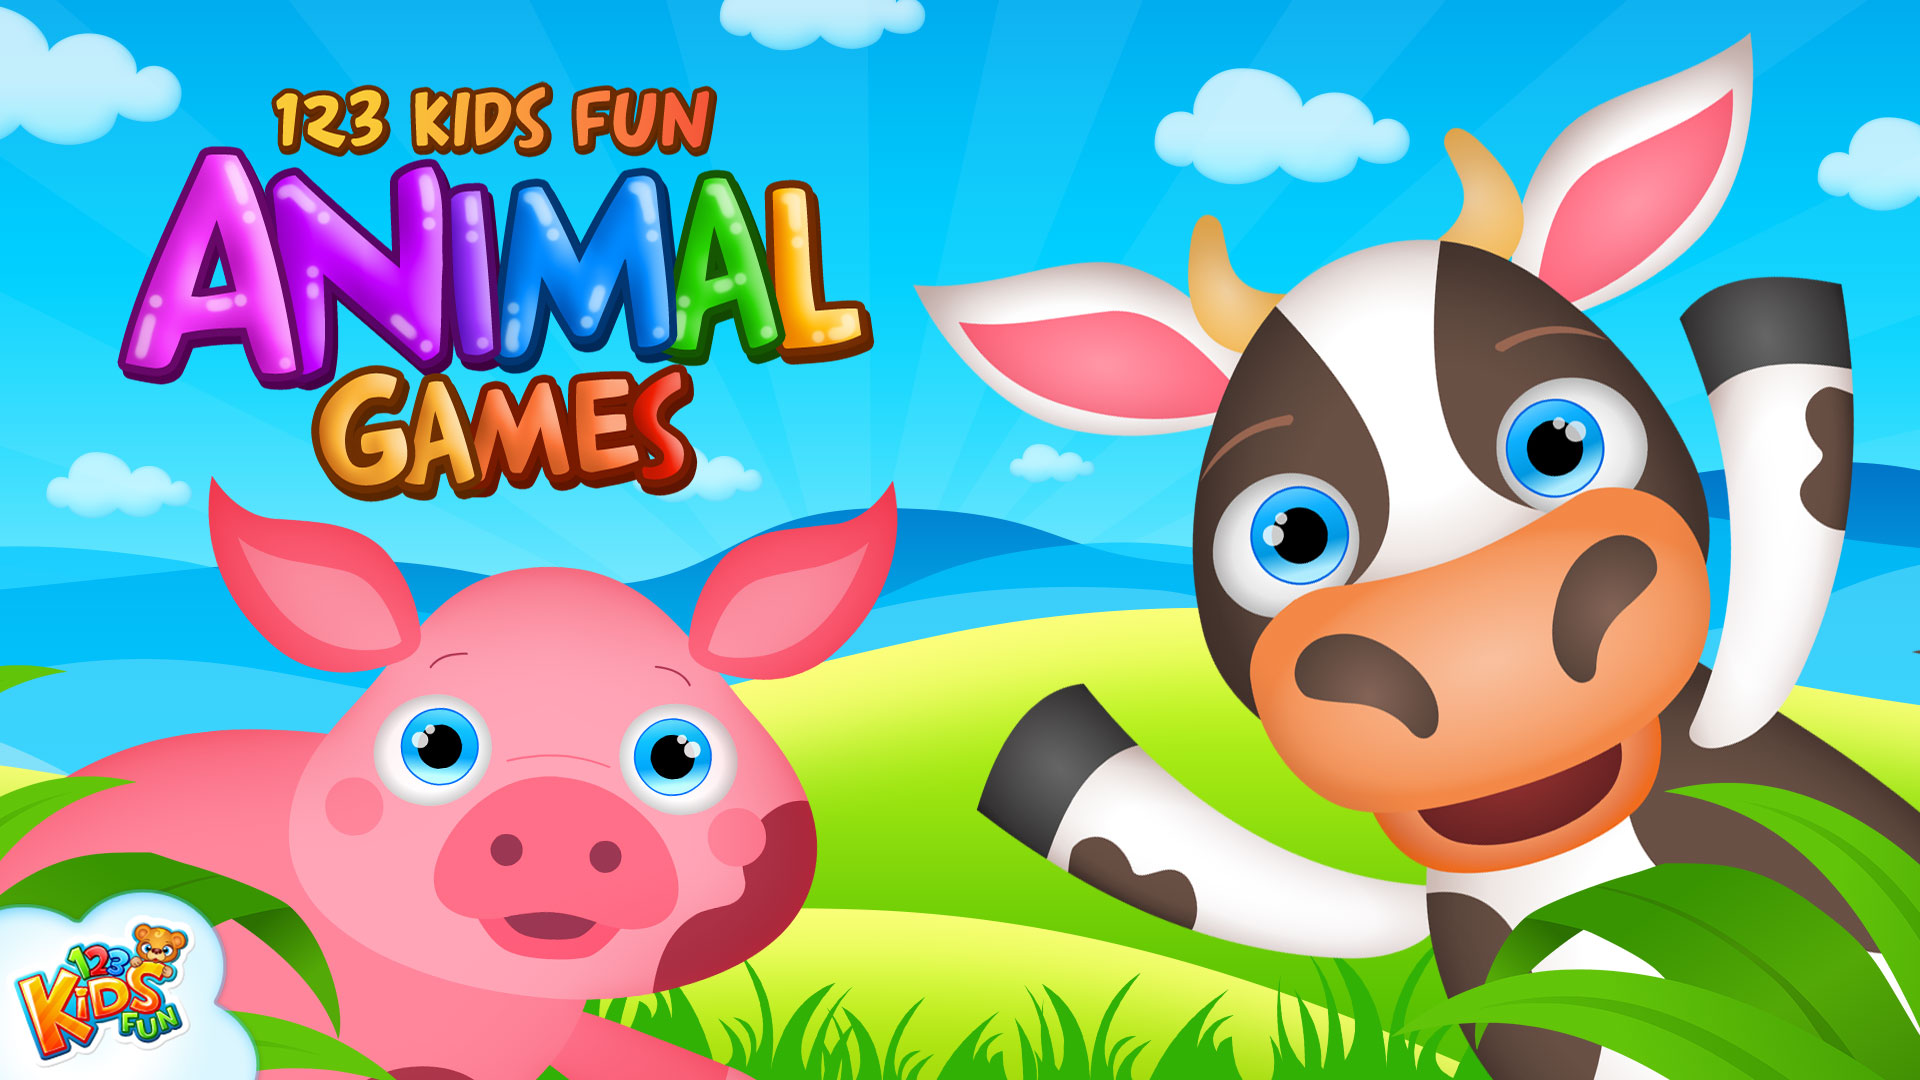 123 Kids Fun Animal Games